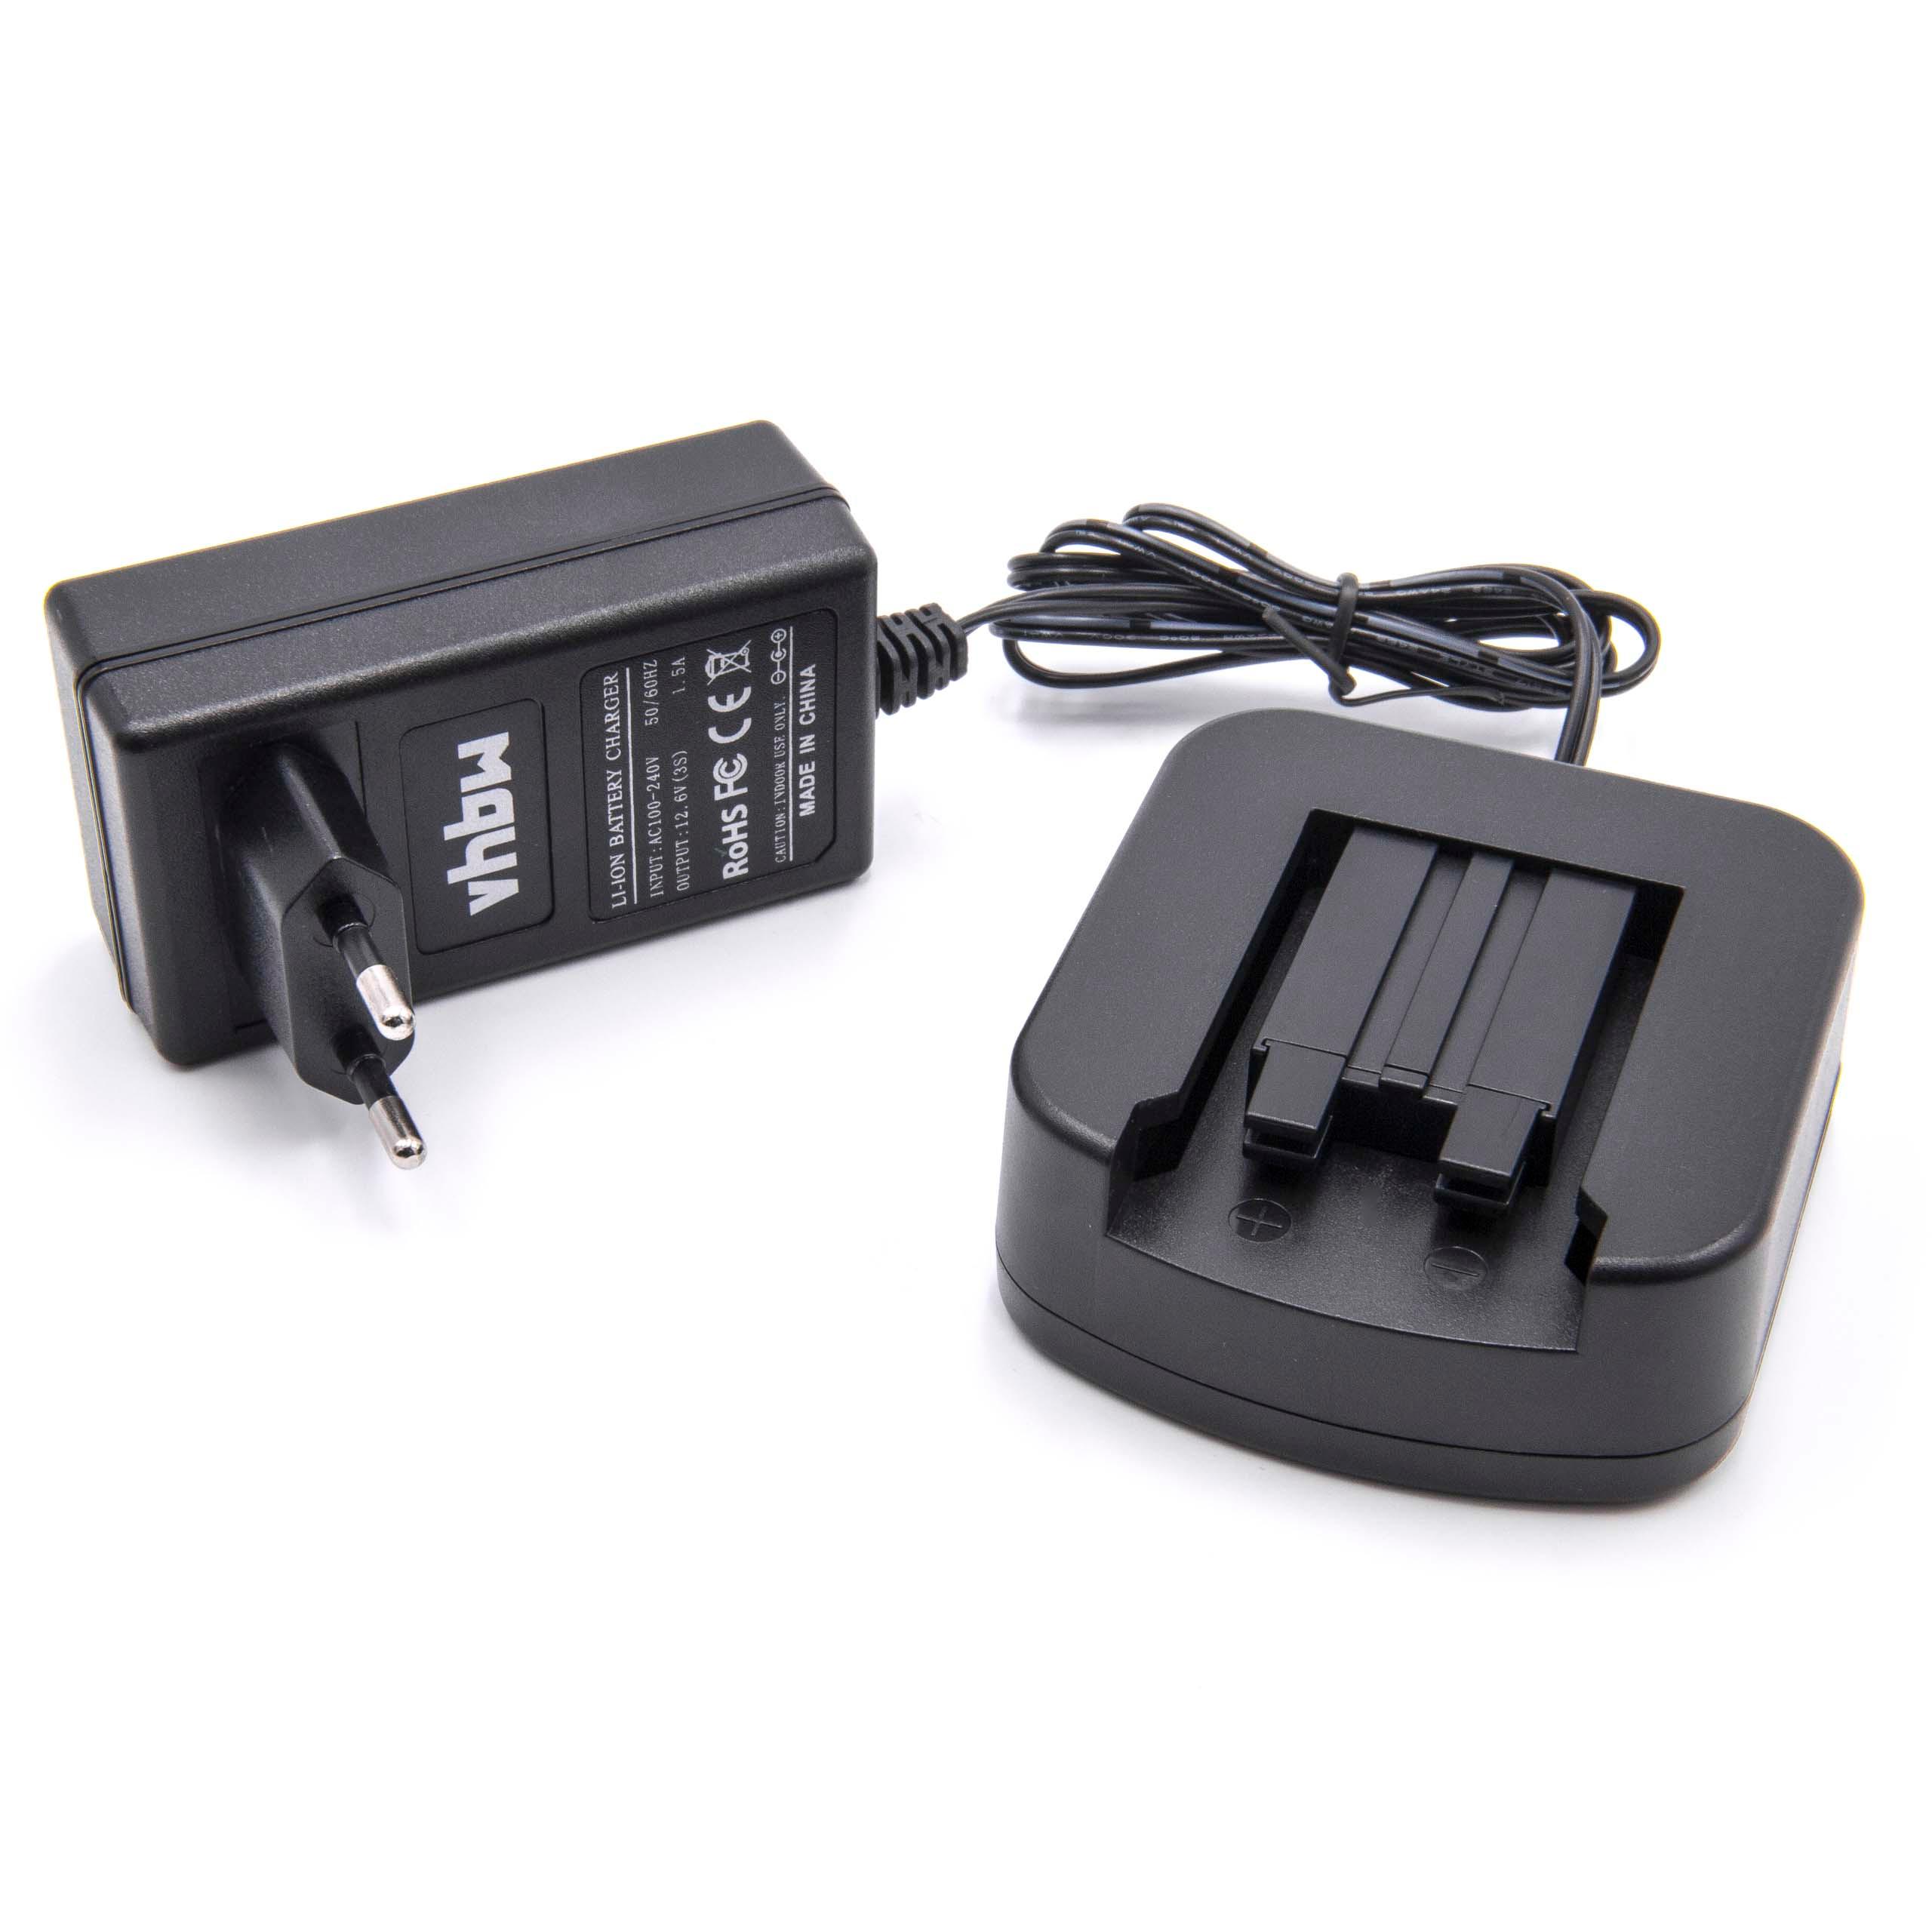 Caricabatterie per batterie utensile , Festo / Festool BP-XS - 10,8 V / 1,5 A